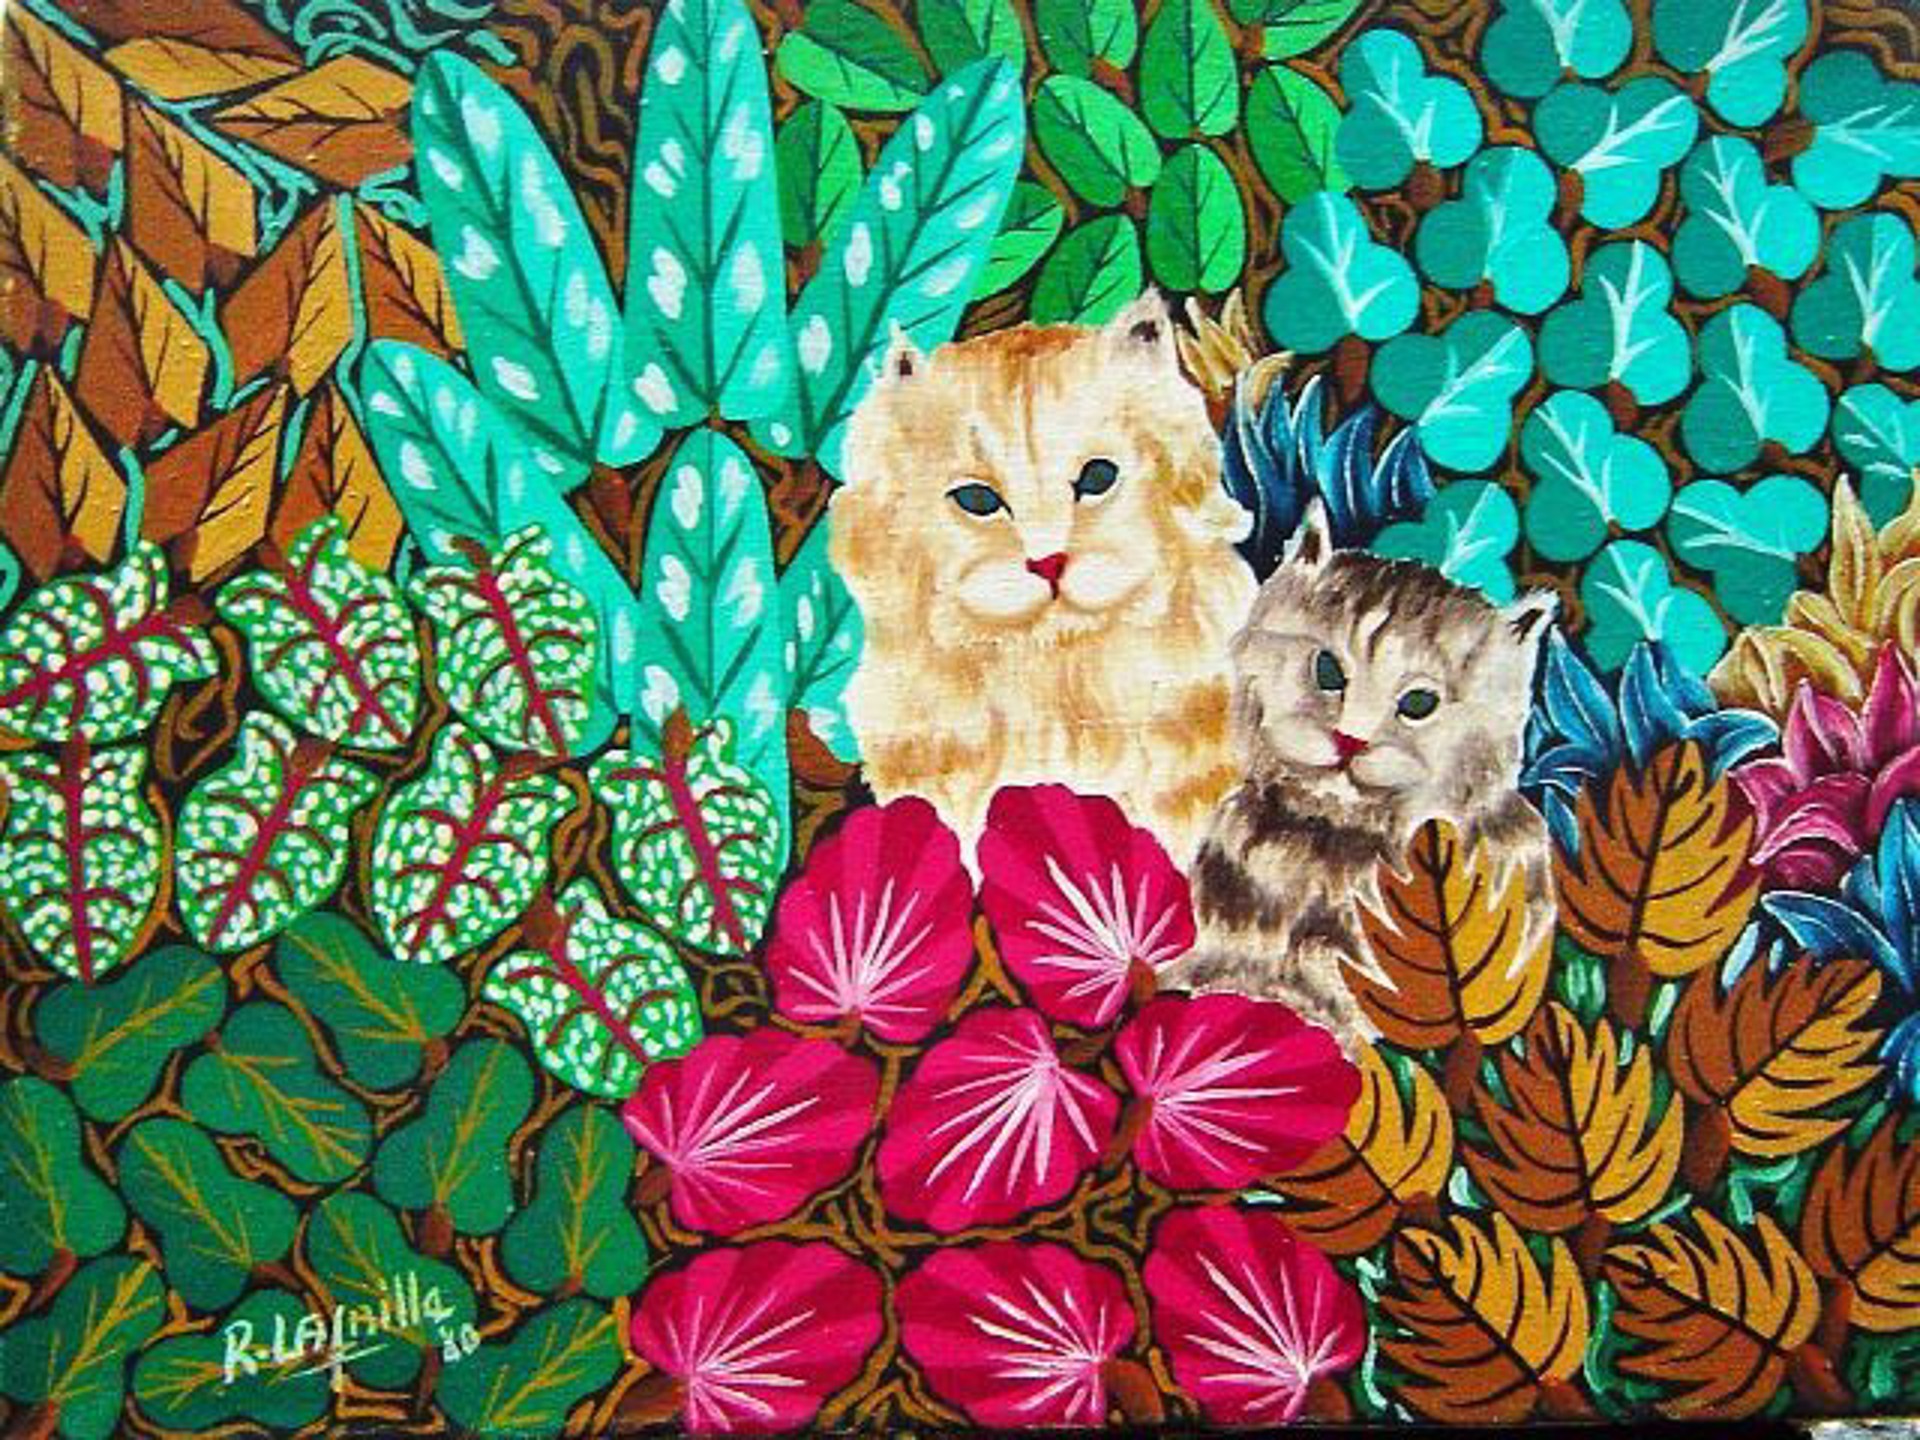 Cat & Kitten #3-2-95MFN by Raymond Lafaille (Haitian)